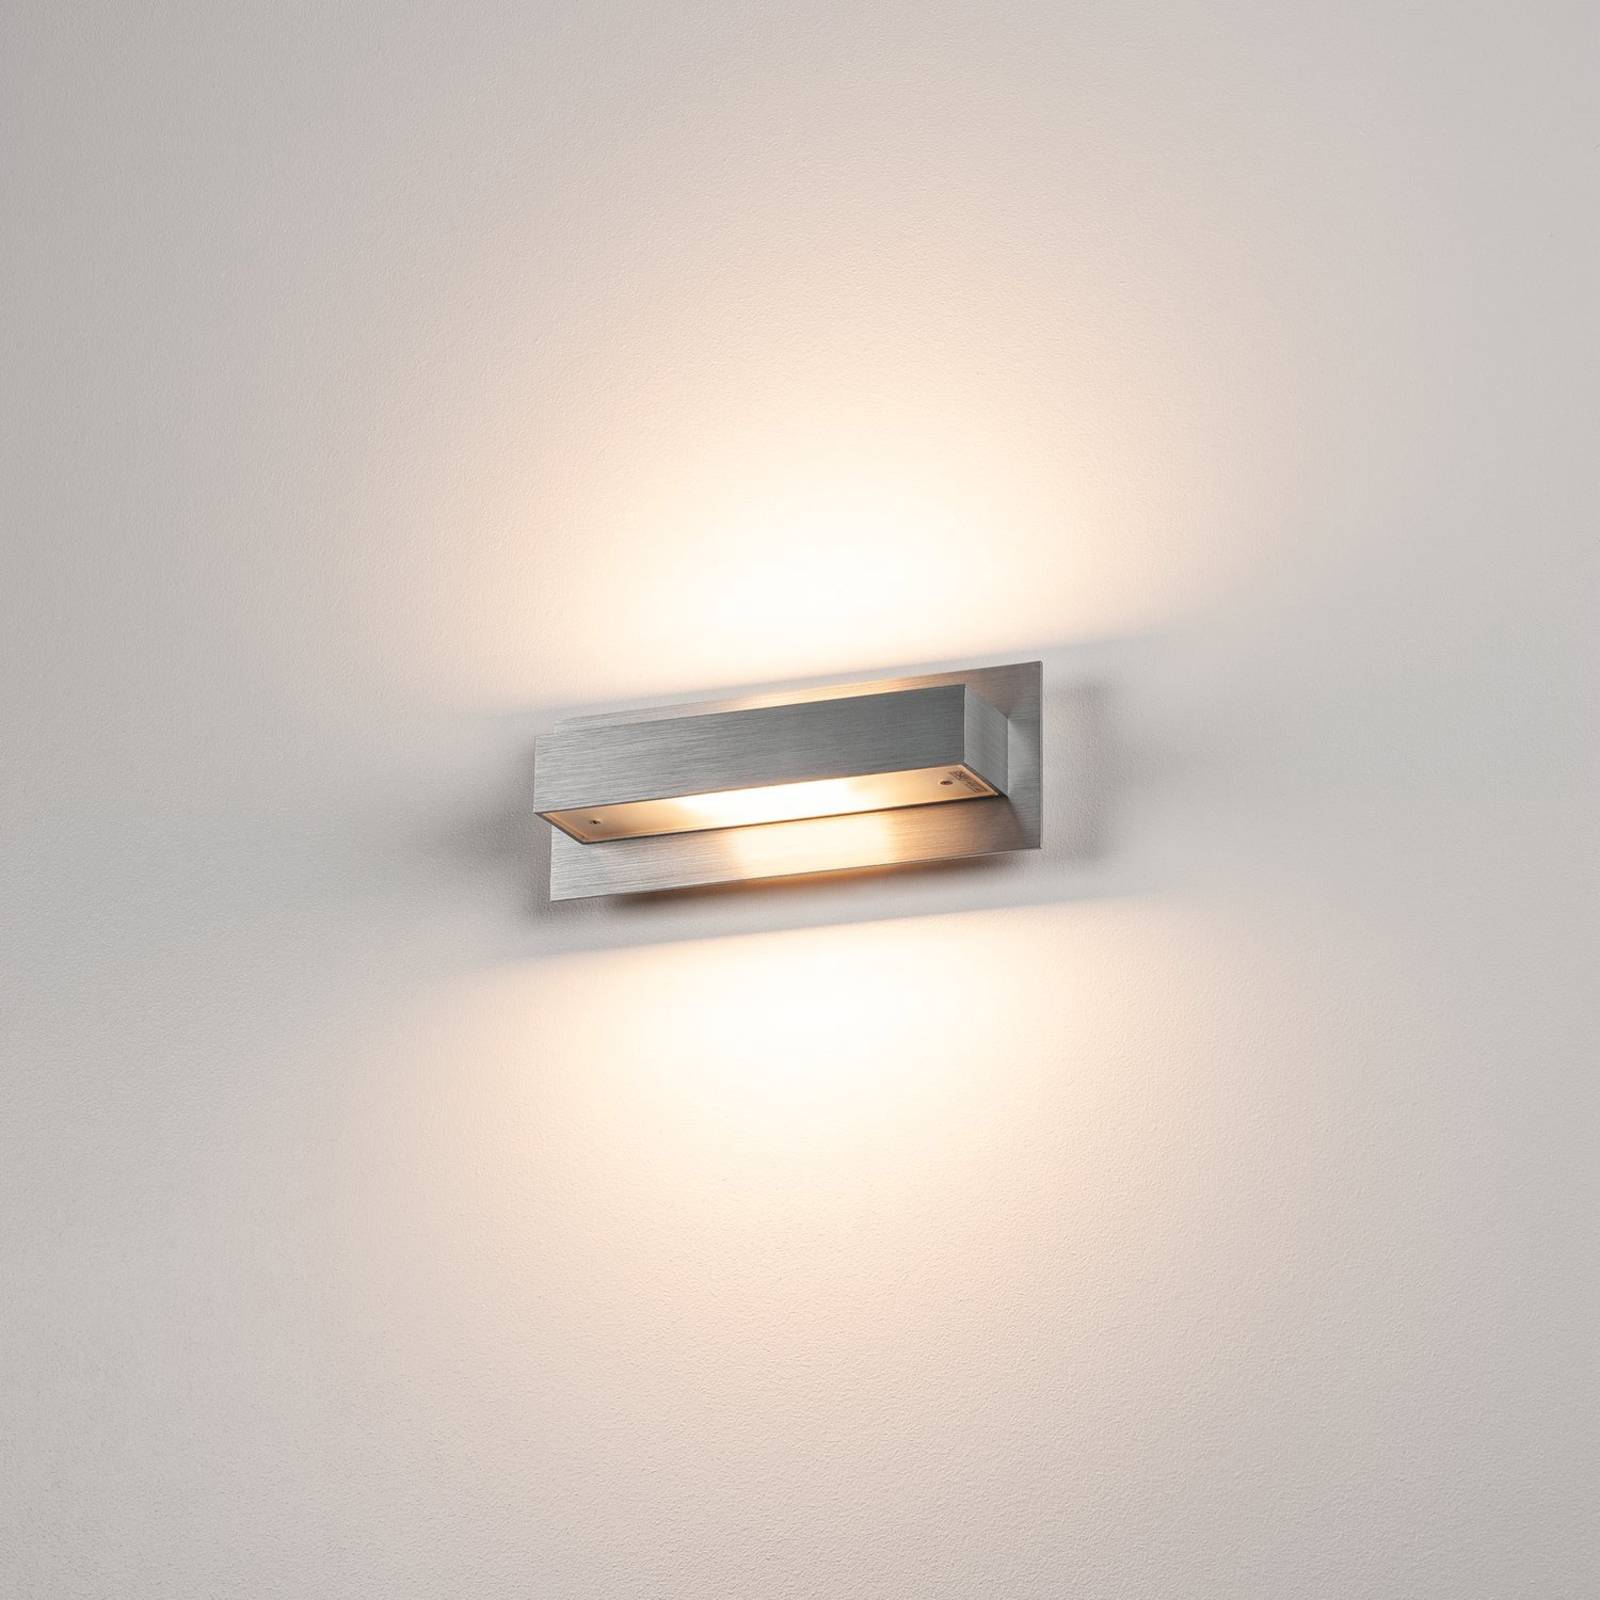 Moderne wandlamp Tani van geborsteld aluminium